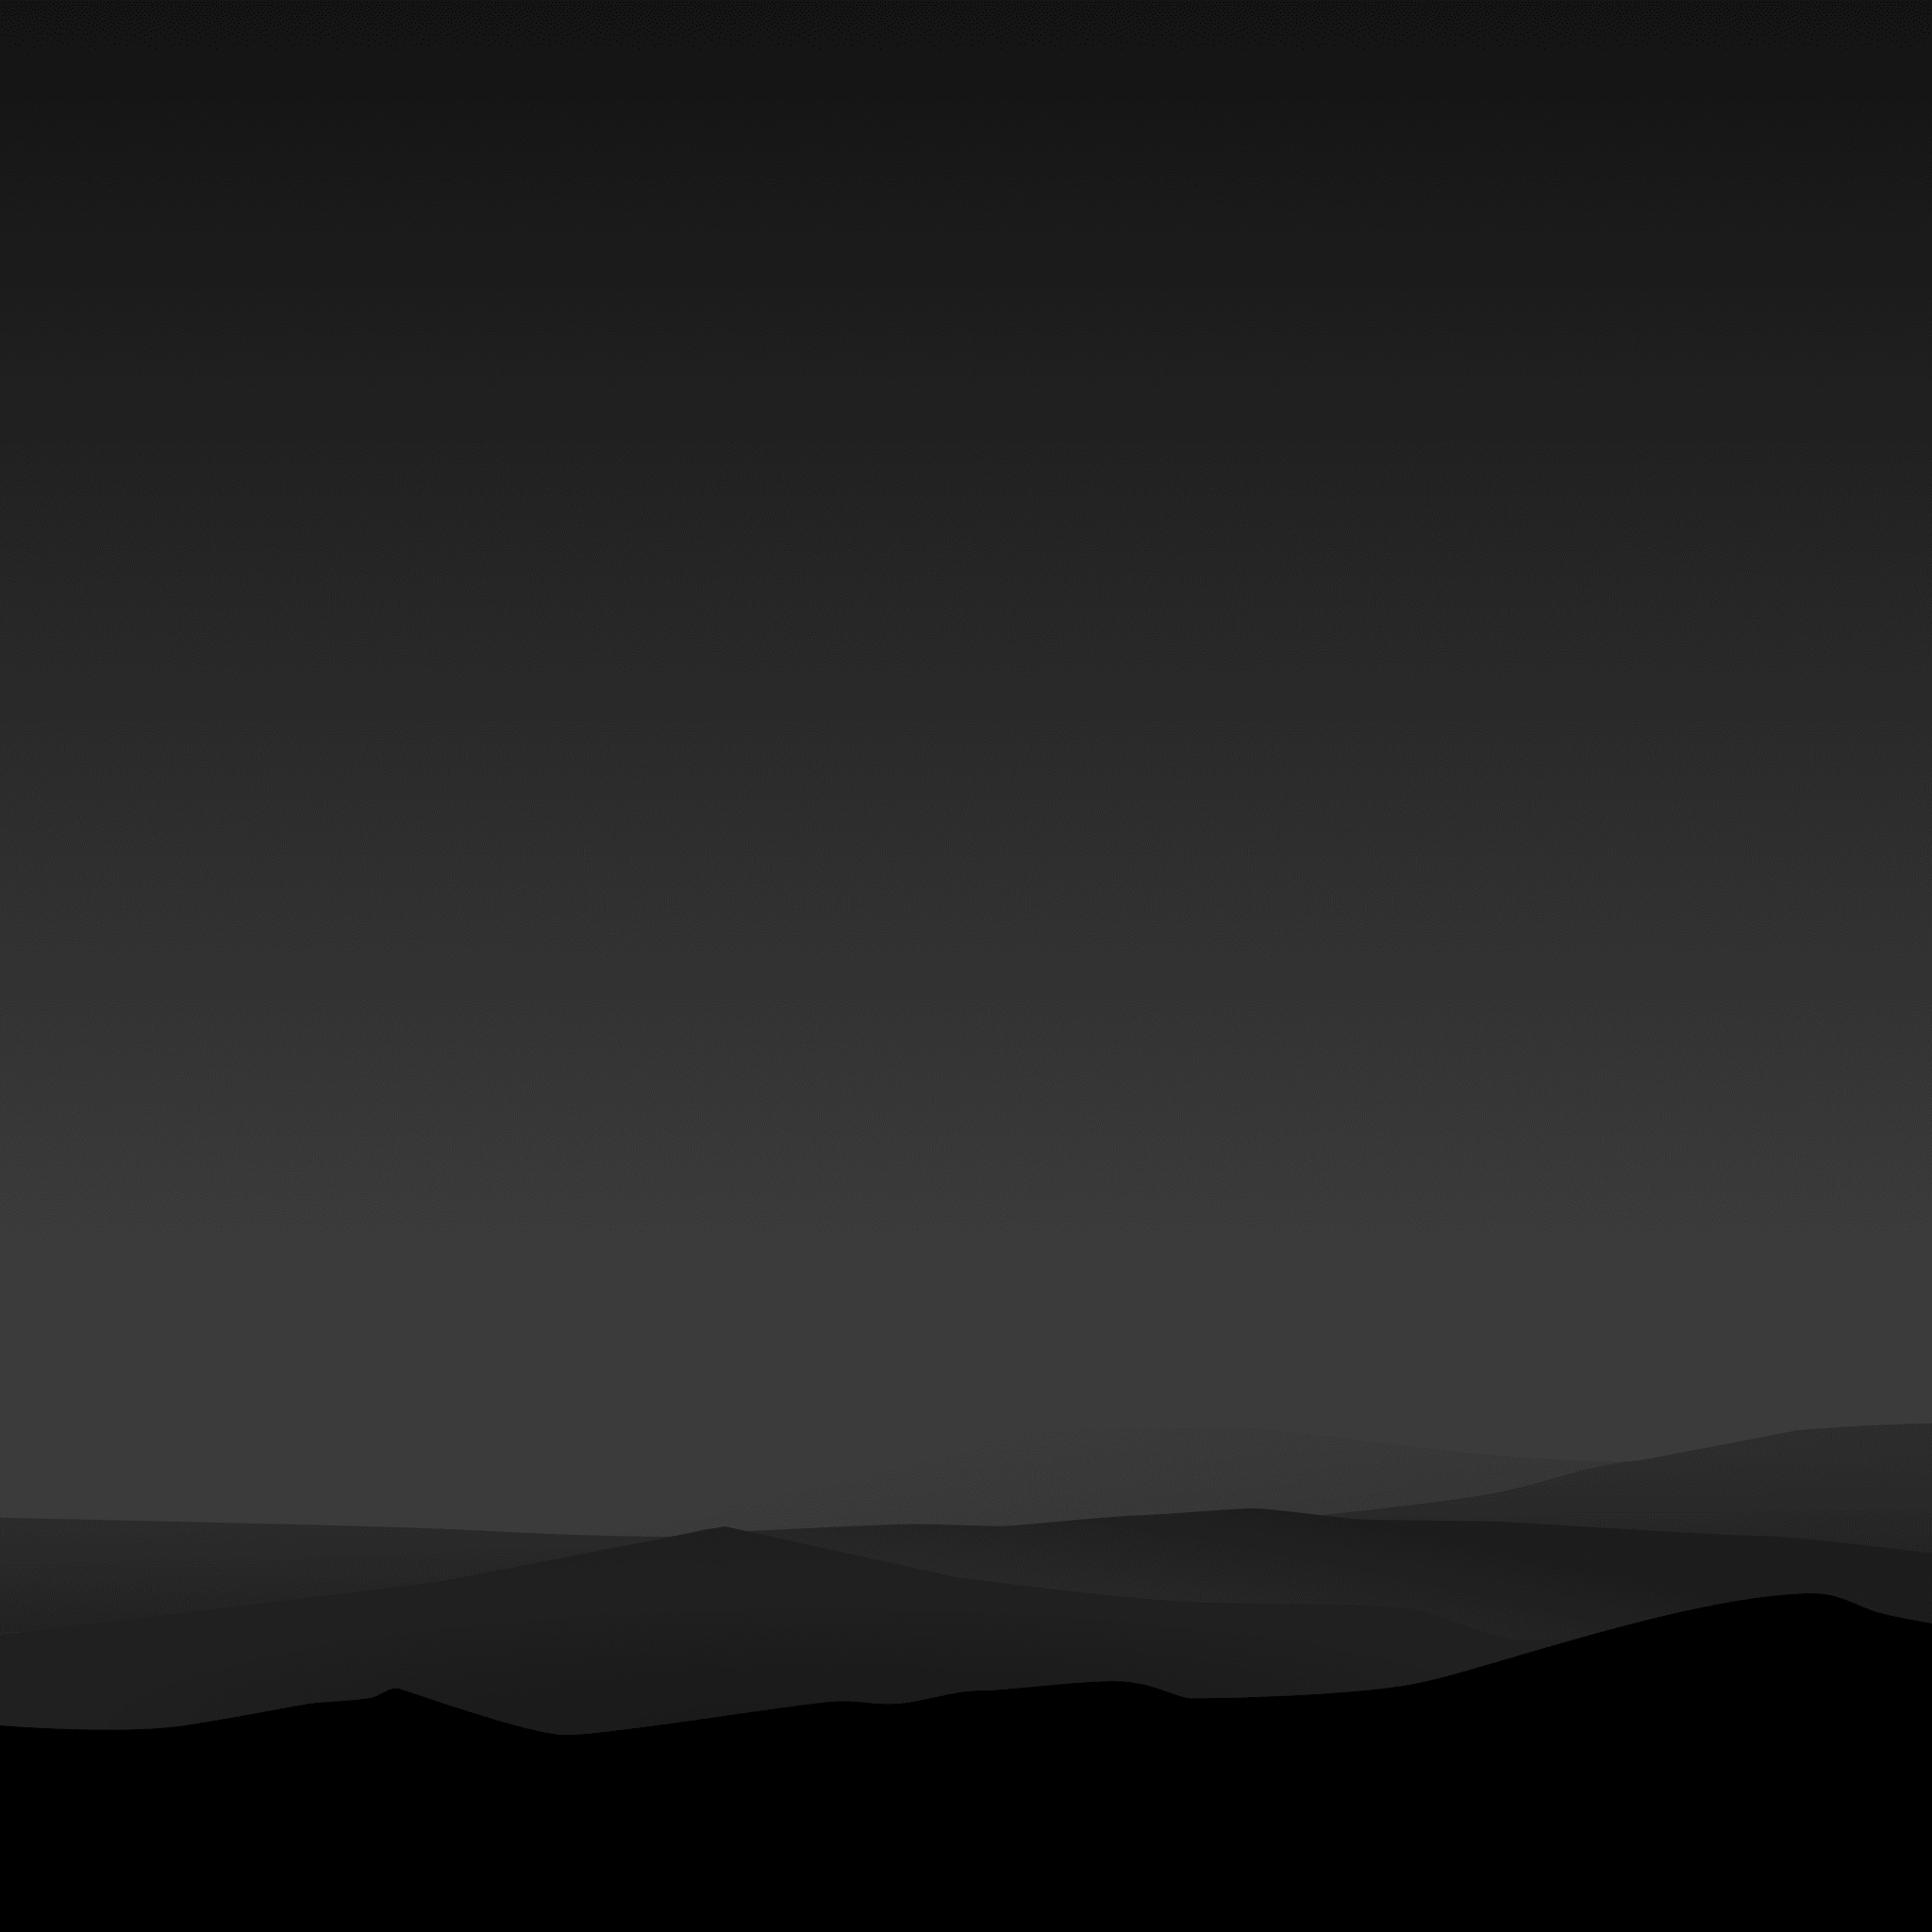 Dark Minimal Mountains At Night Wallpapers